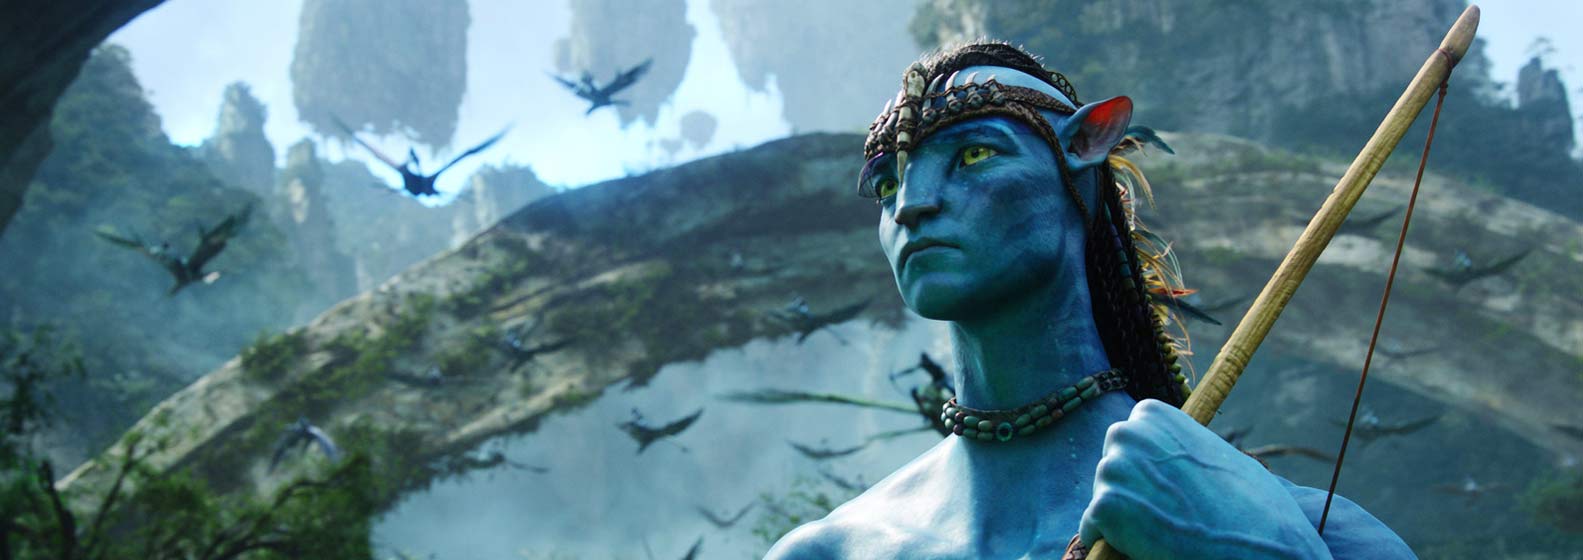 Avatar: la voie de l’eau - Header Image